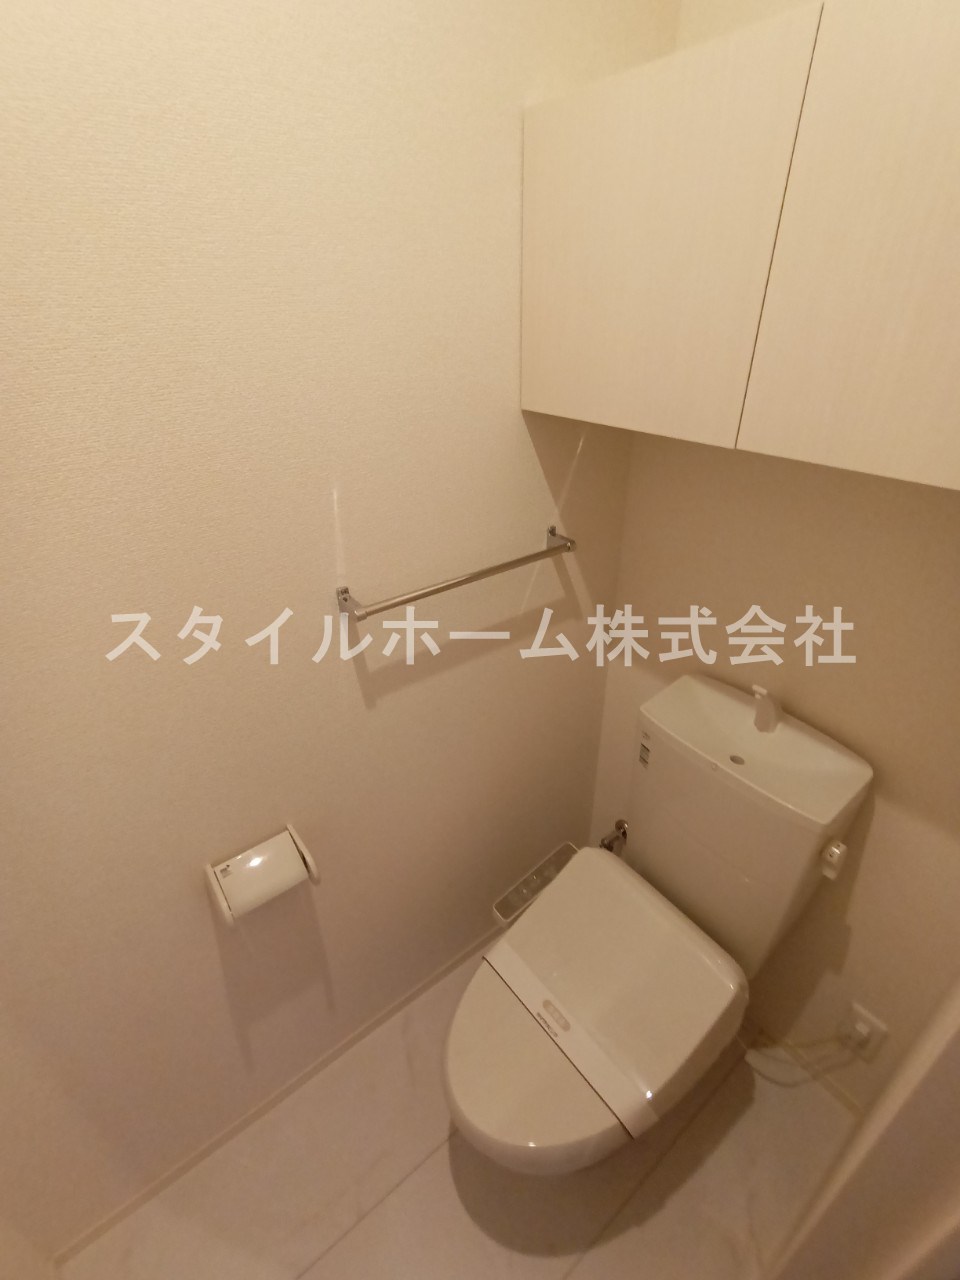 【ロイヤルストーンのトイレ】